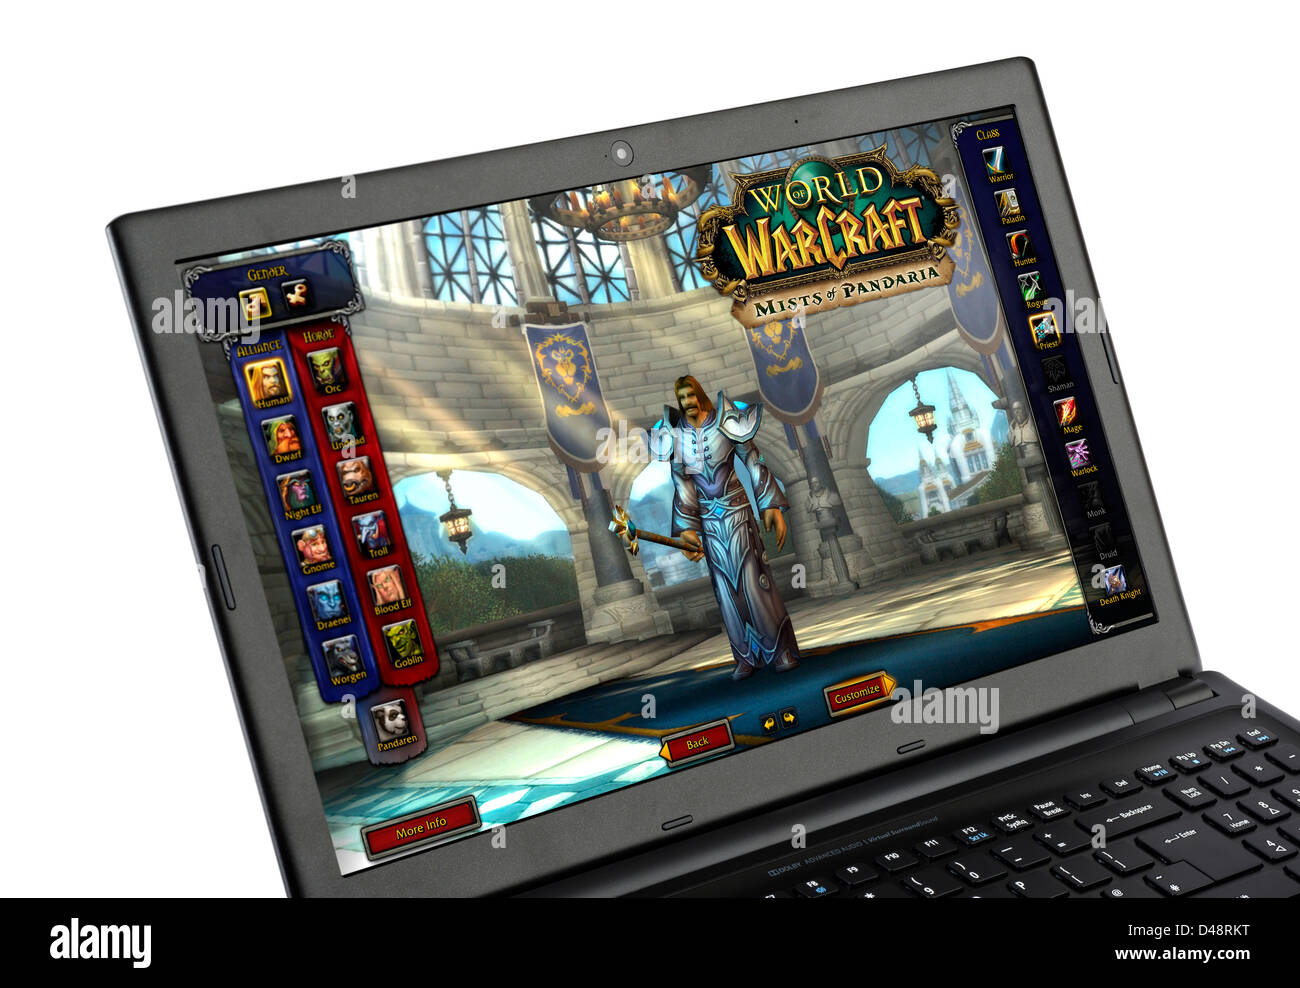 El popular "World of Warcraft - Nieblas de Pandaria' multiplayer online role playing game (MMORPG) de un ordenador portátil Foto de stock